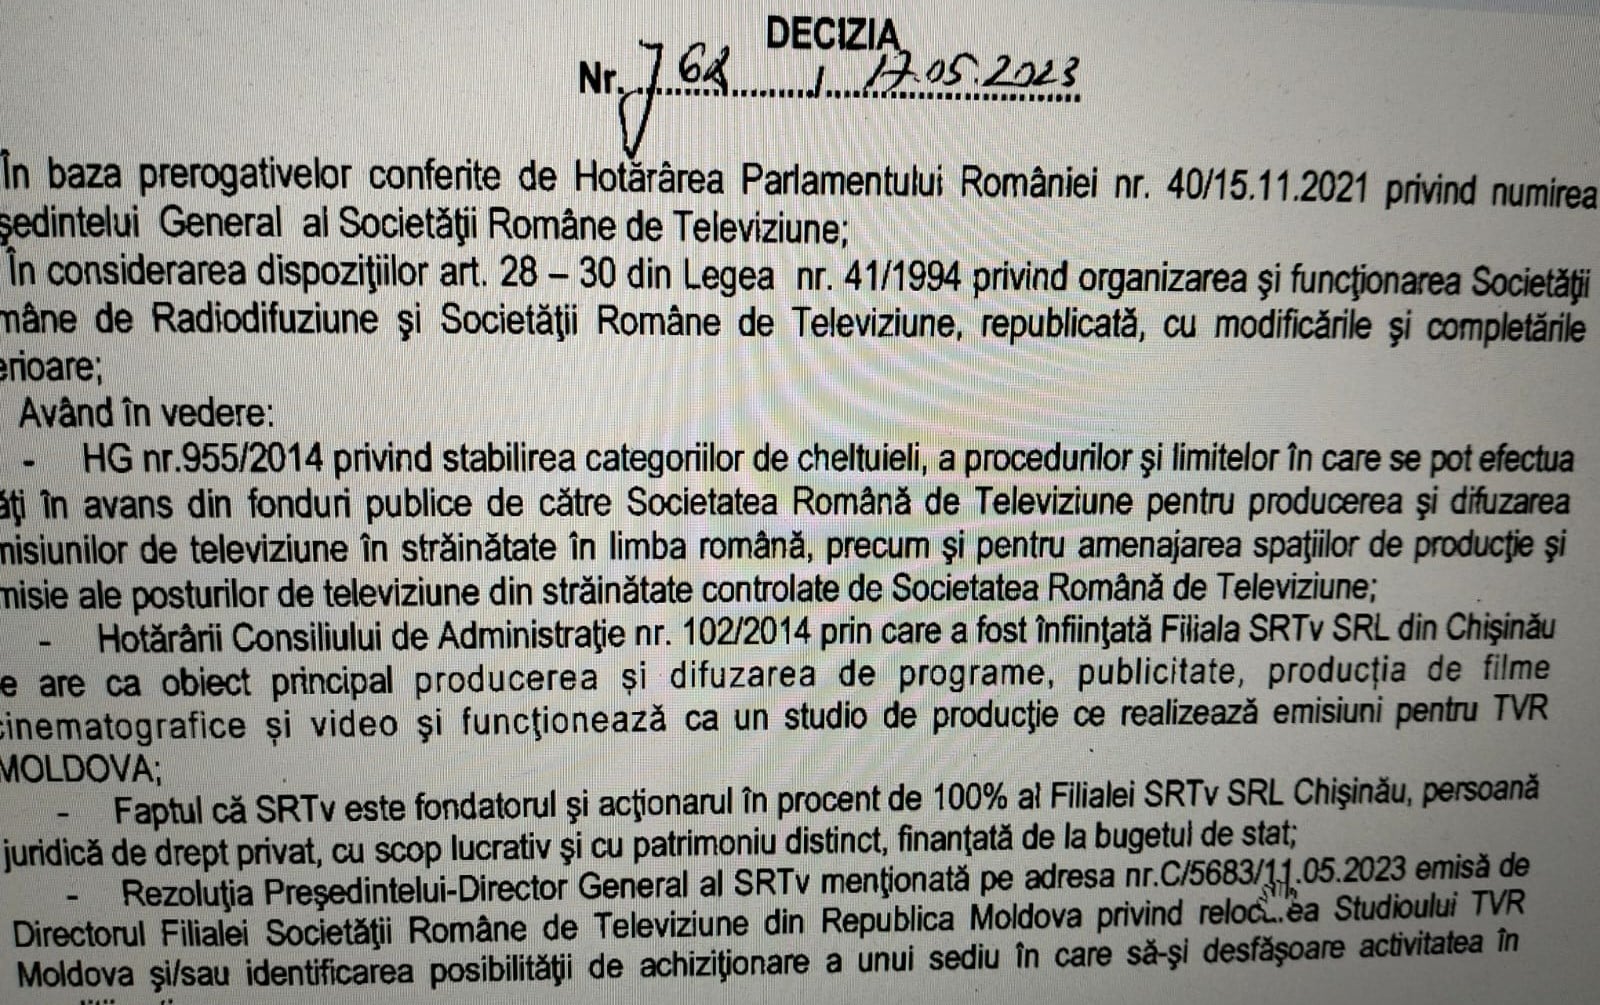 18 martie 2024 Dan Turturică a mutat postul TVR MOLDOVA în clădirea Editurii Litera Chișinău